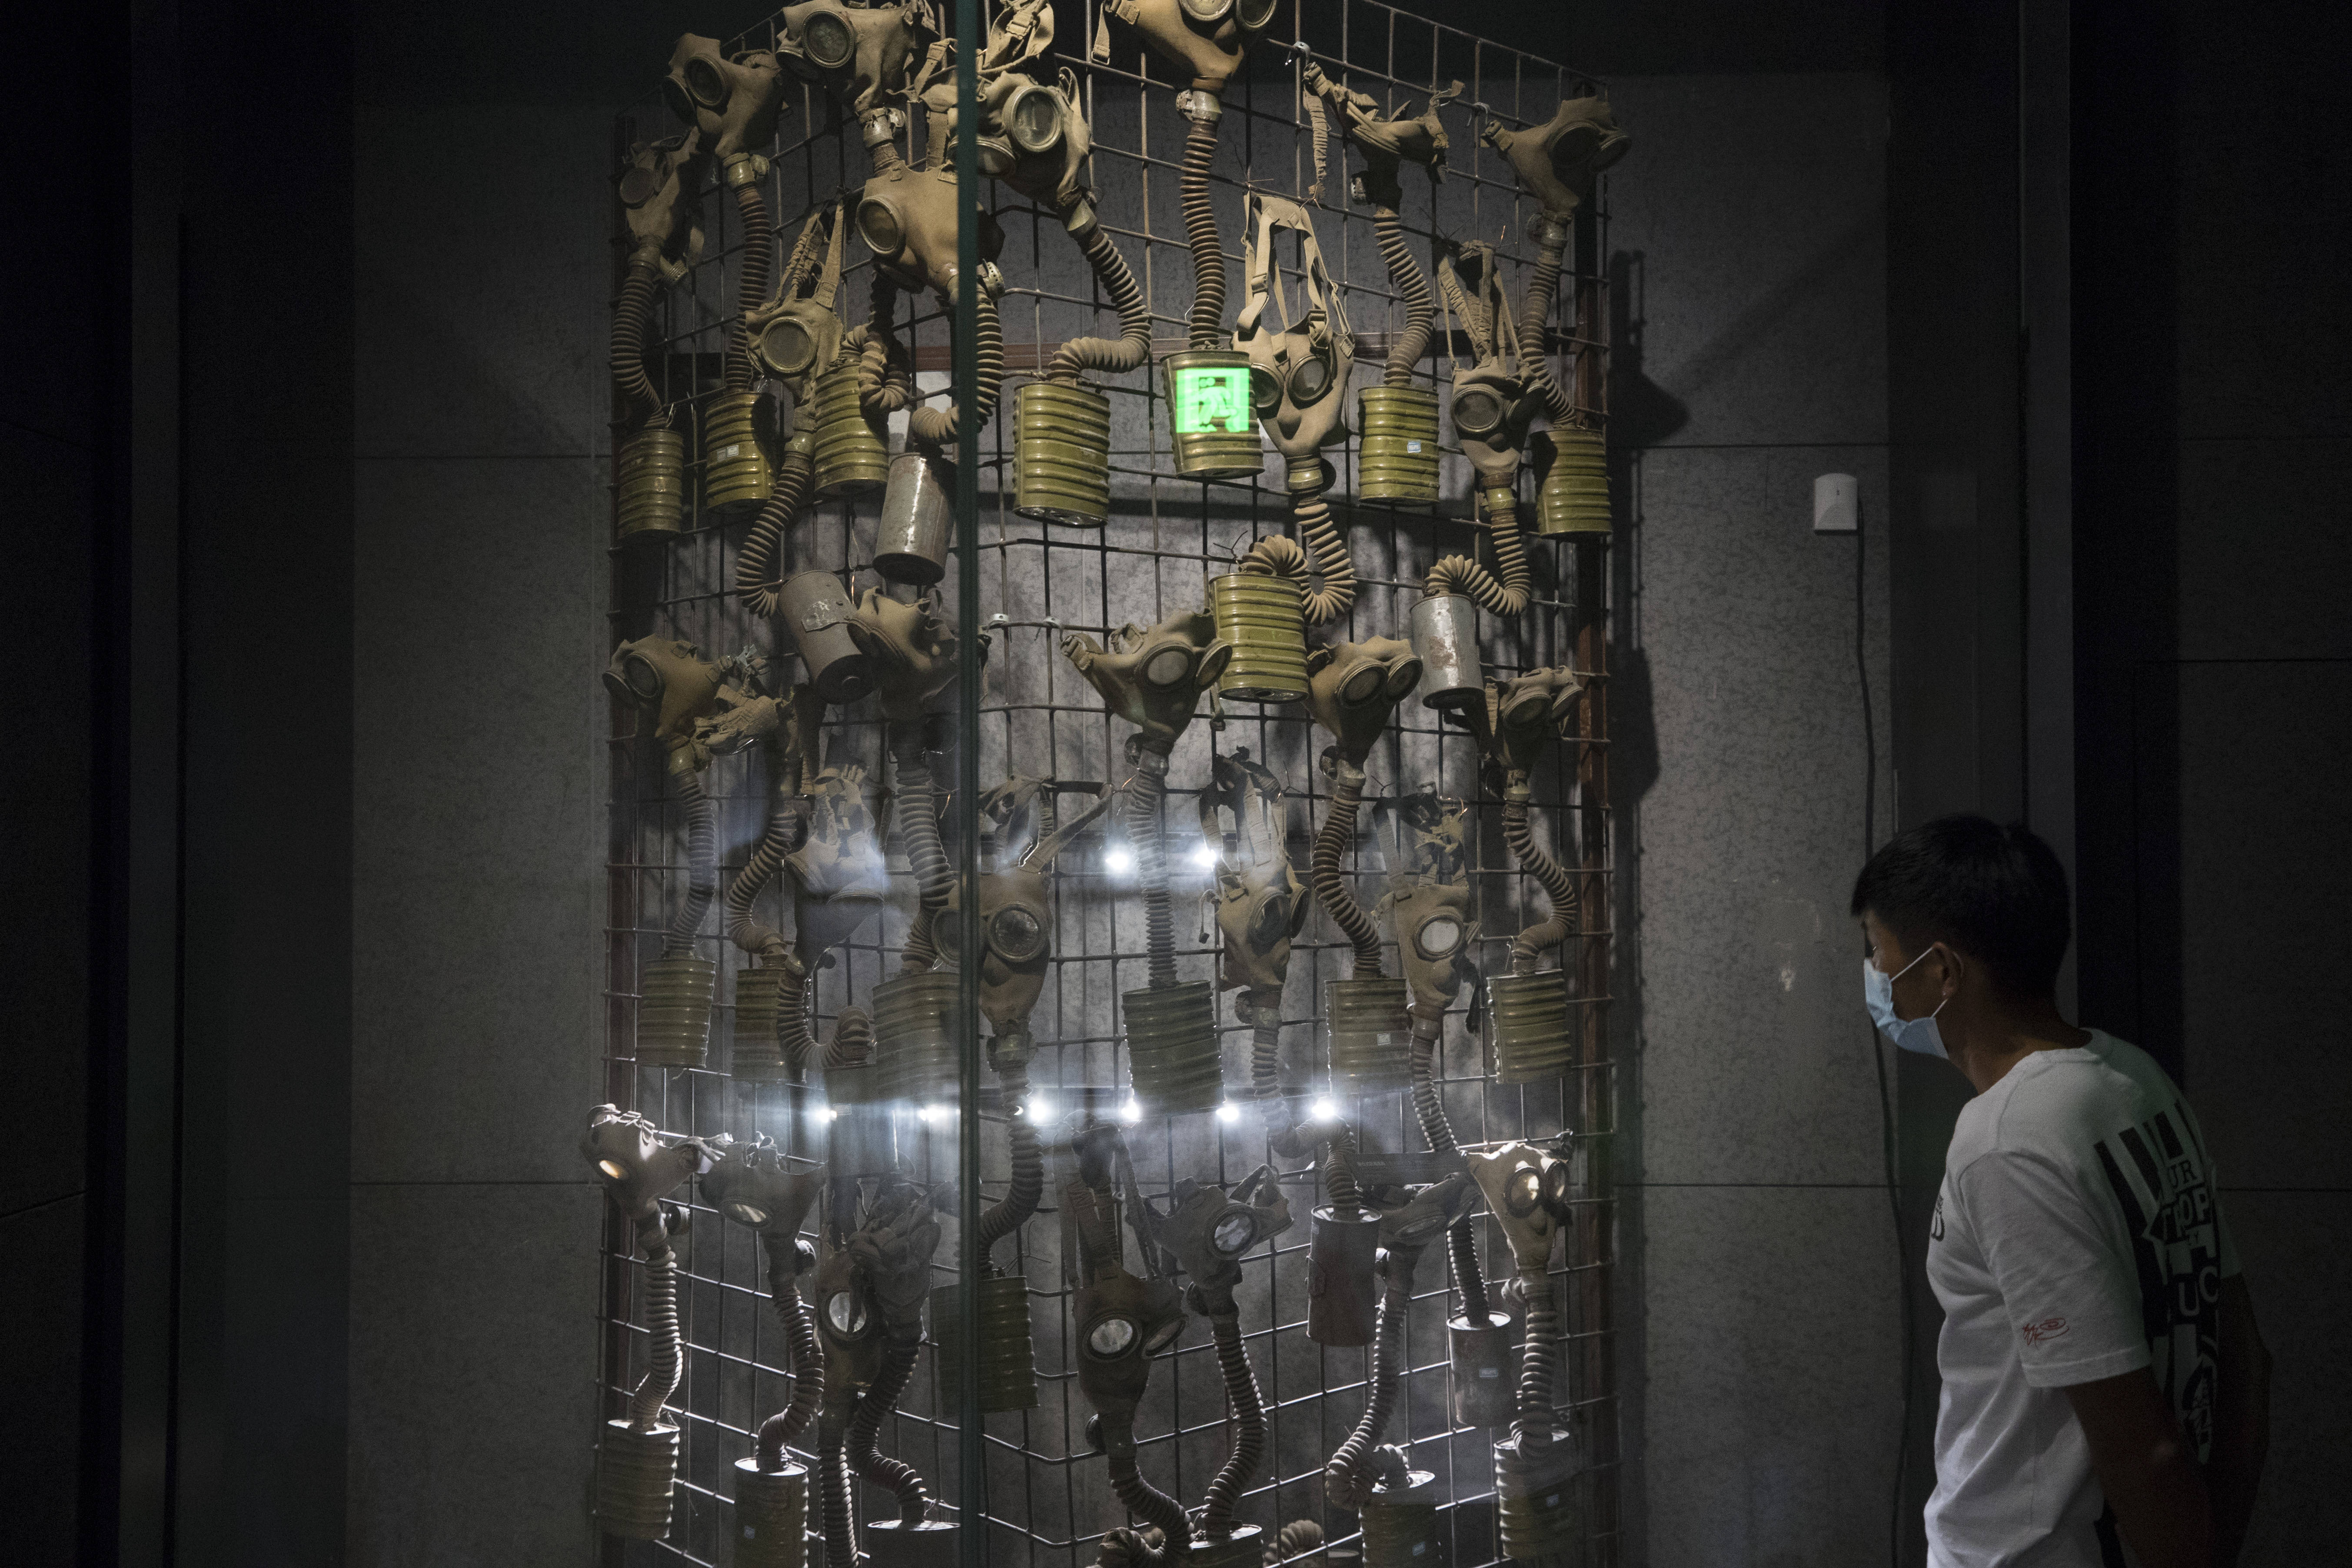 731部队罪证遗址博物馆图片